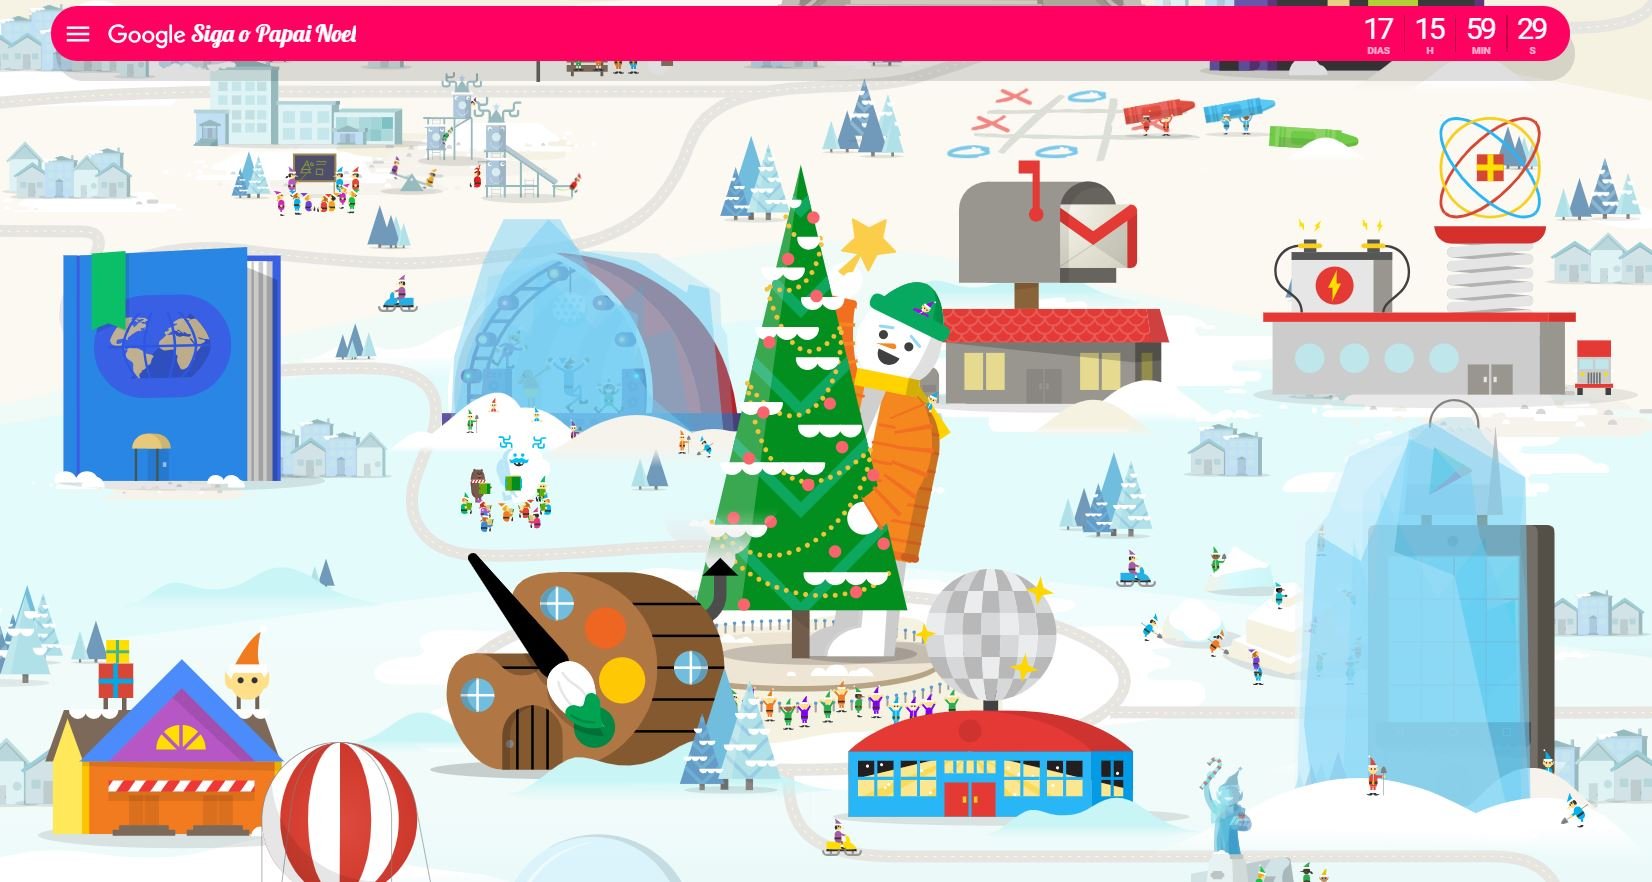 Vila do Papai Noel voltou! Google celebra o natal com muita diversão -  TecMundo